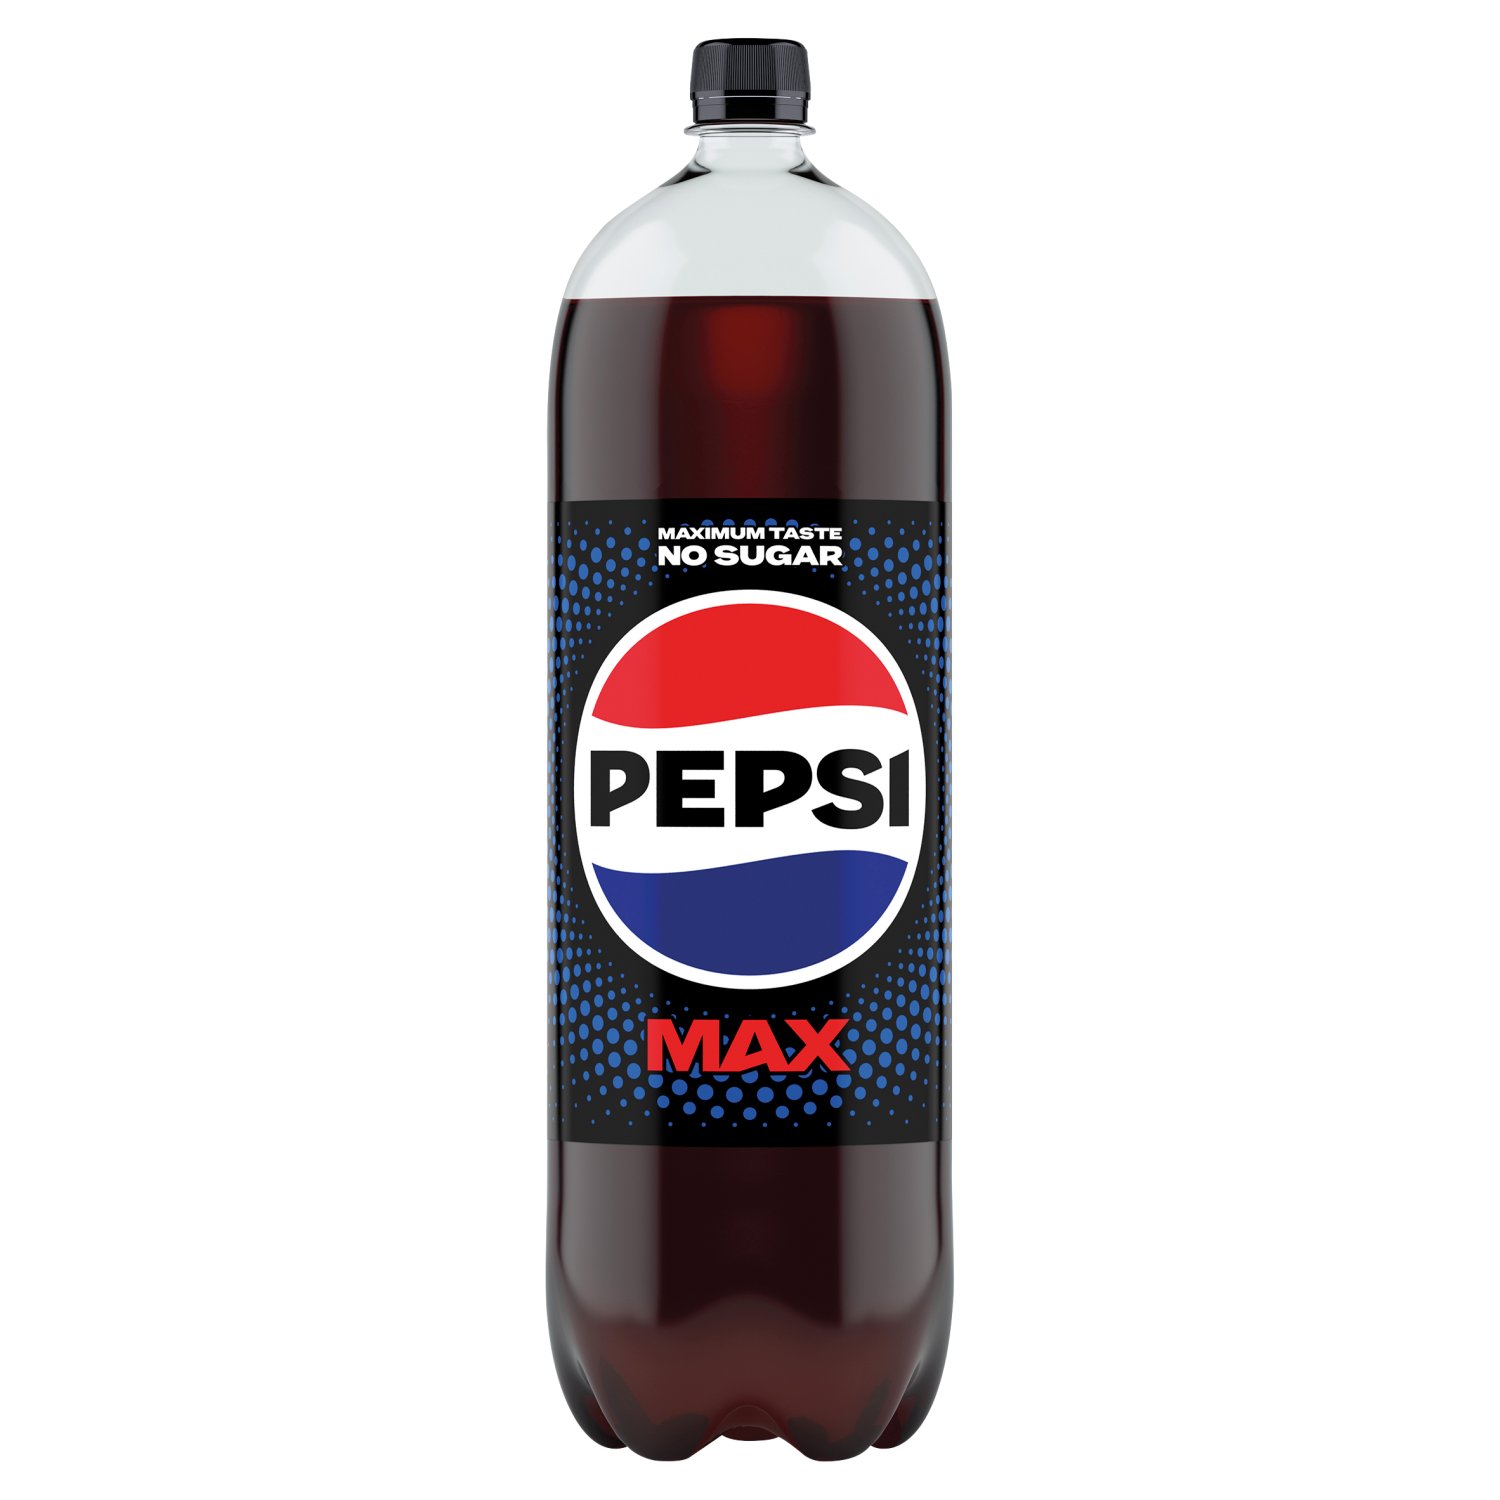 Pepsi Max No Sugar Cola Bottle (2 L)